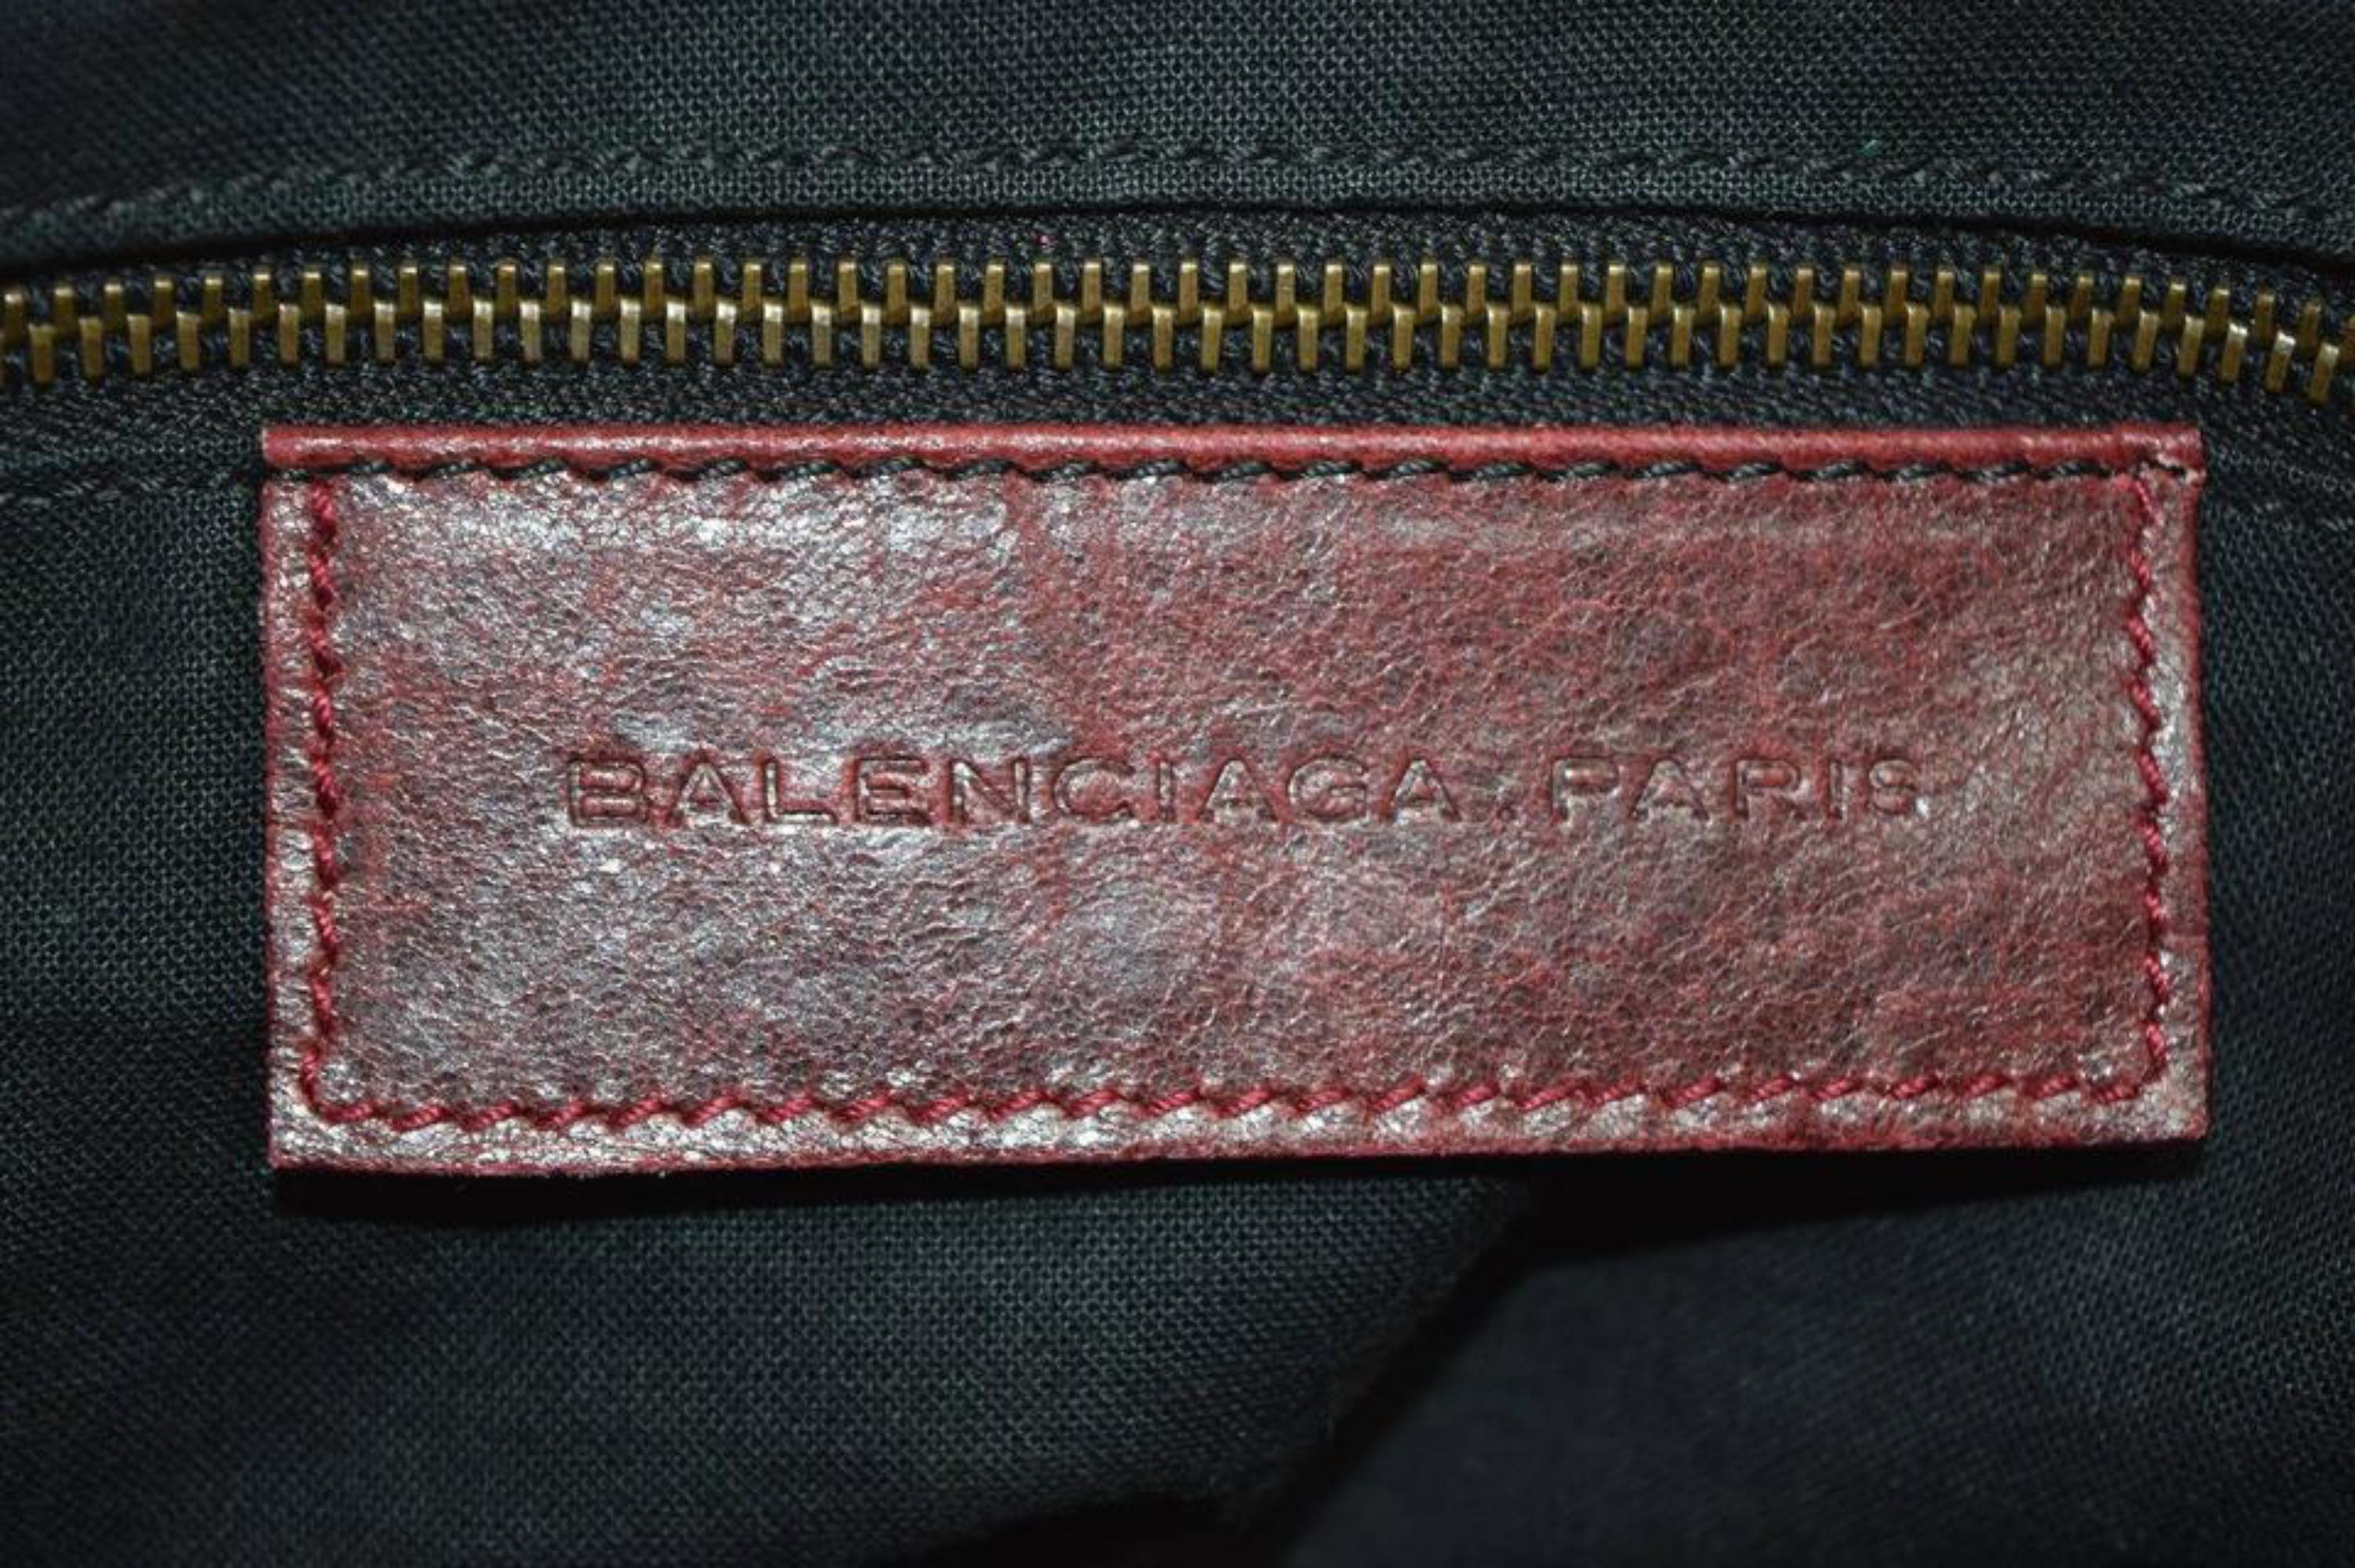 Brown Balenciaga Bordeaux Chevre Purse Handbag 866829 Red Leather Satchel For Sale